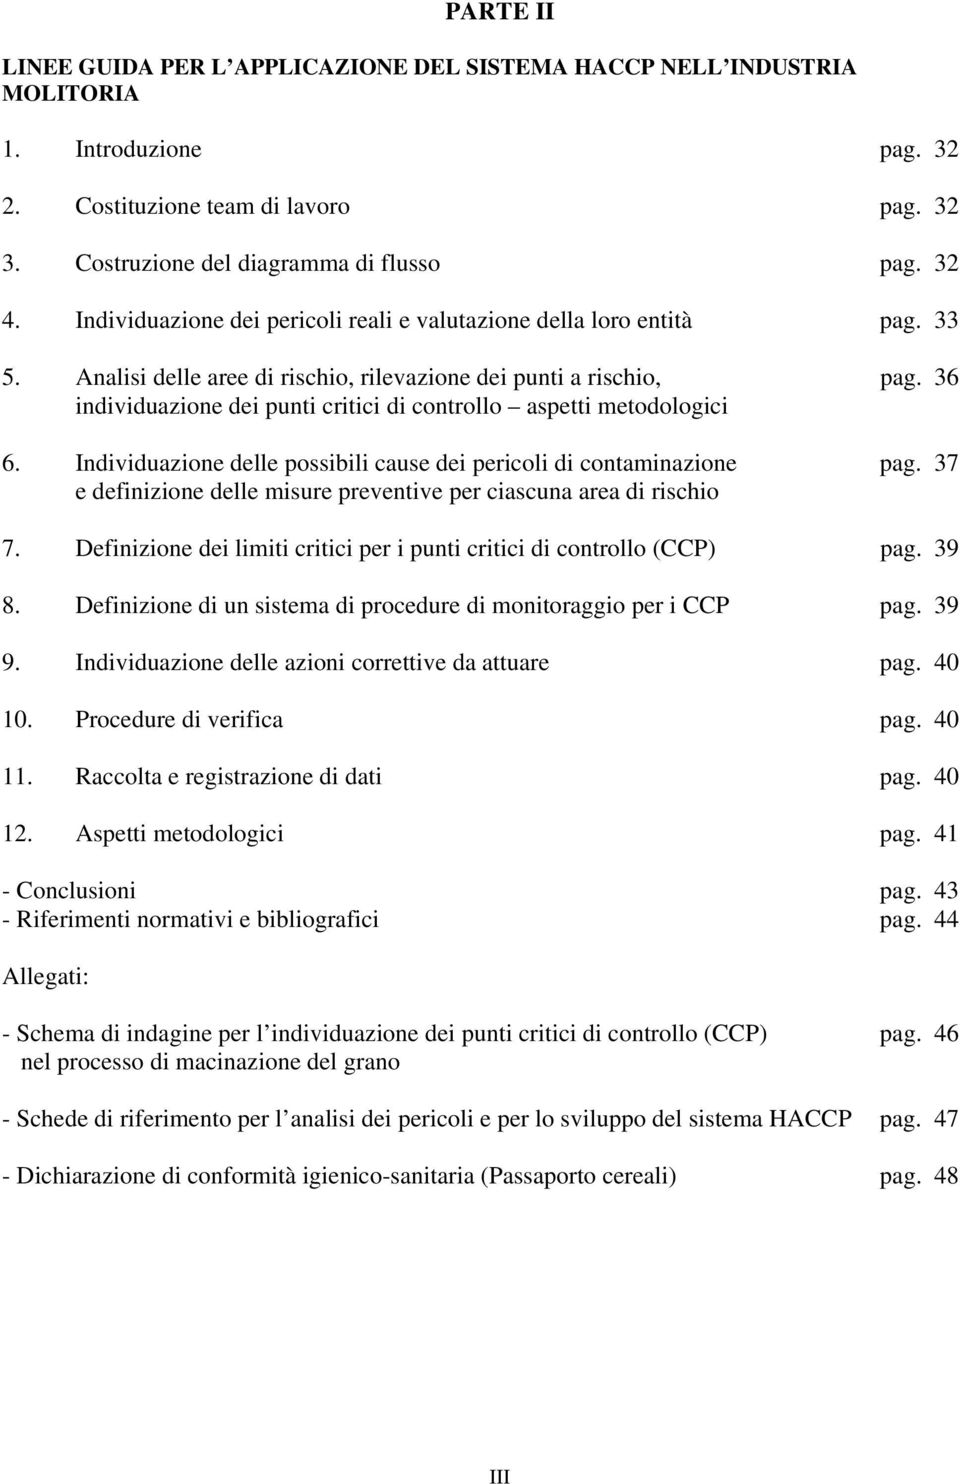 36 individuazione dei punti critici di controllo aspetti metodologici 6. Individuazione delle possibili cause dei pericoli di contaminazione pag.